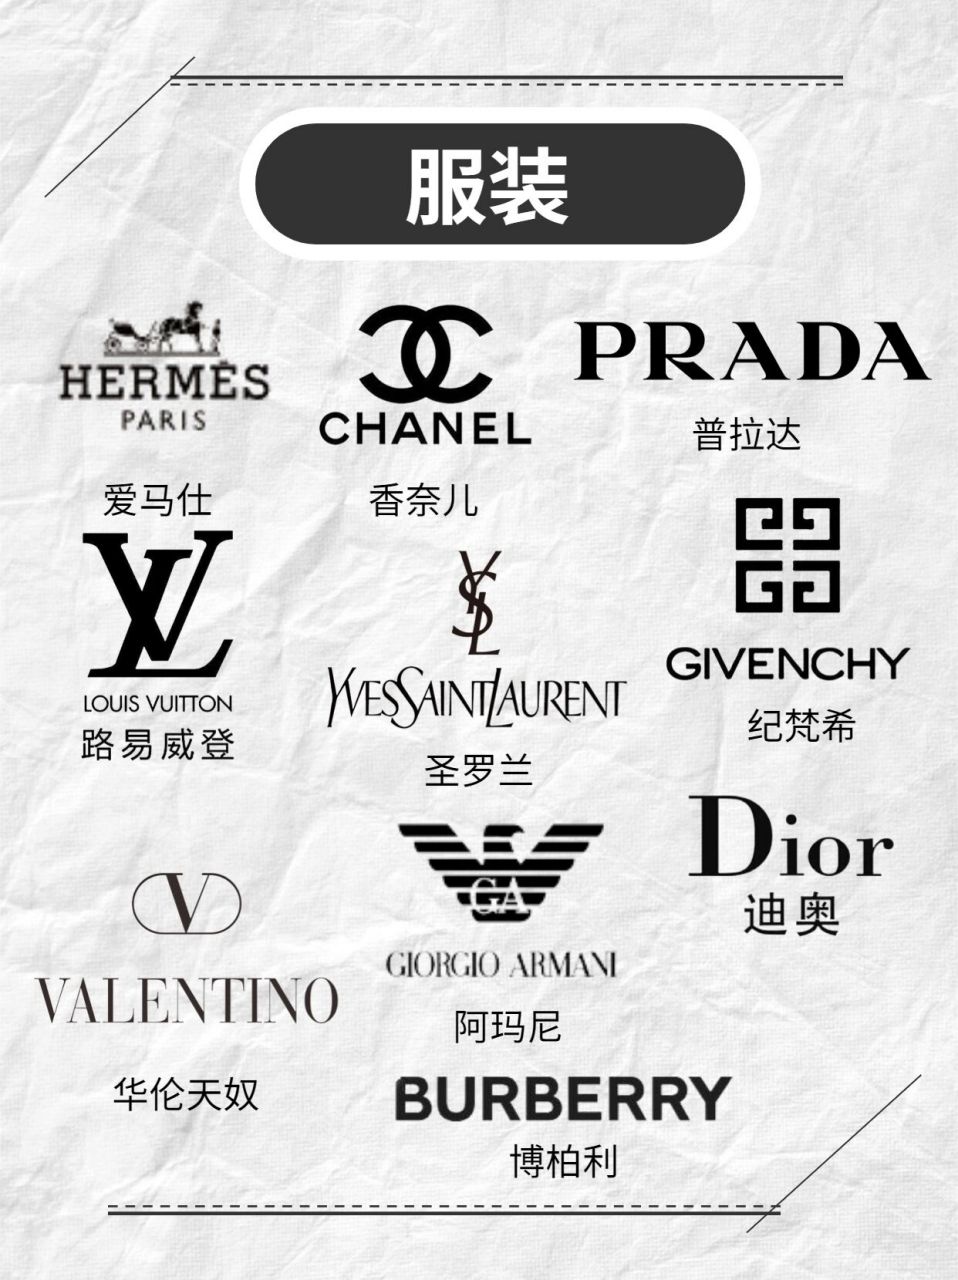 奢侈品牌logo大全 合集图片